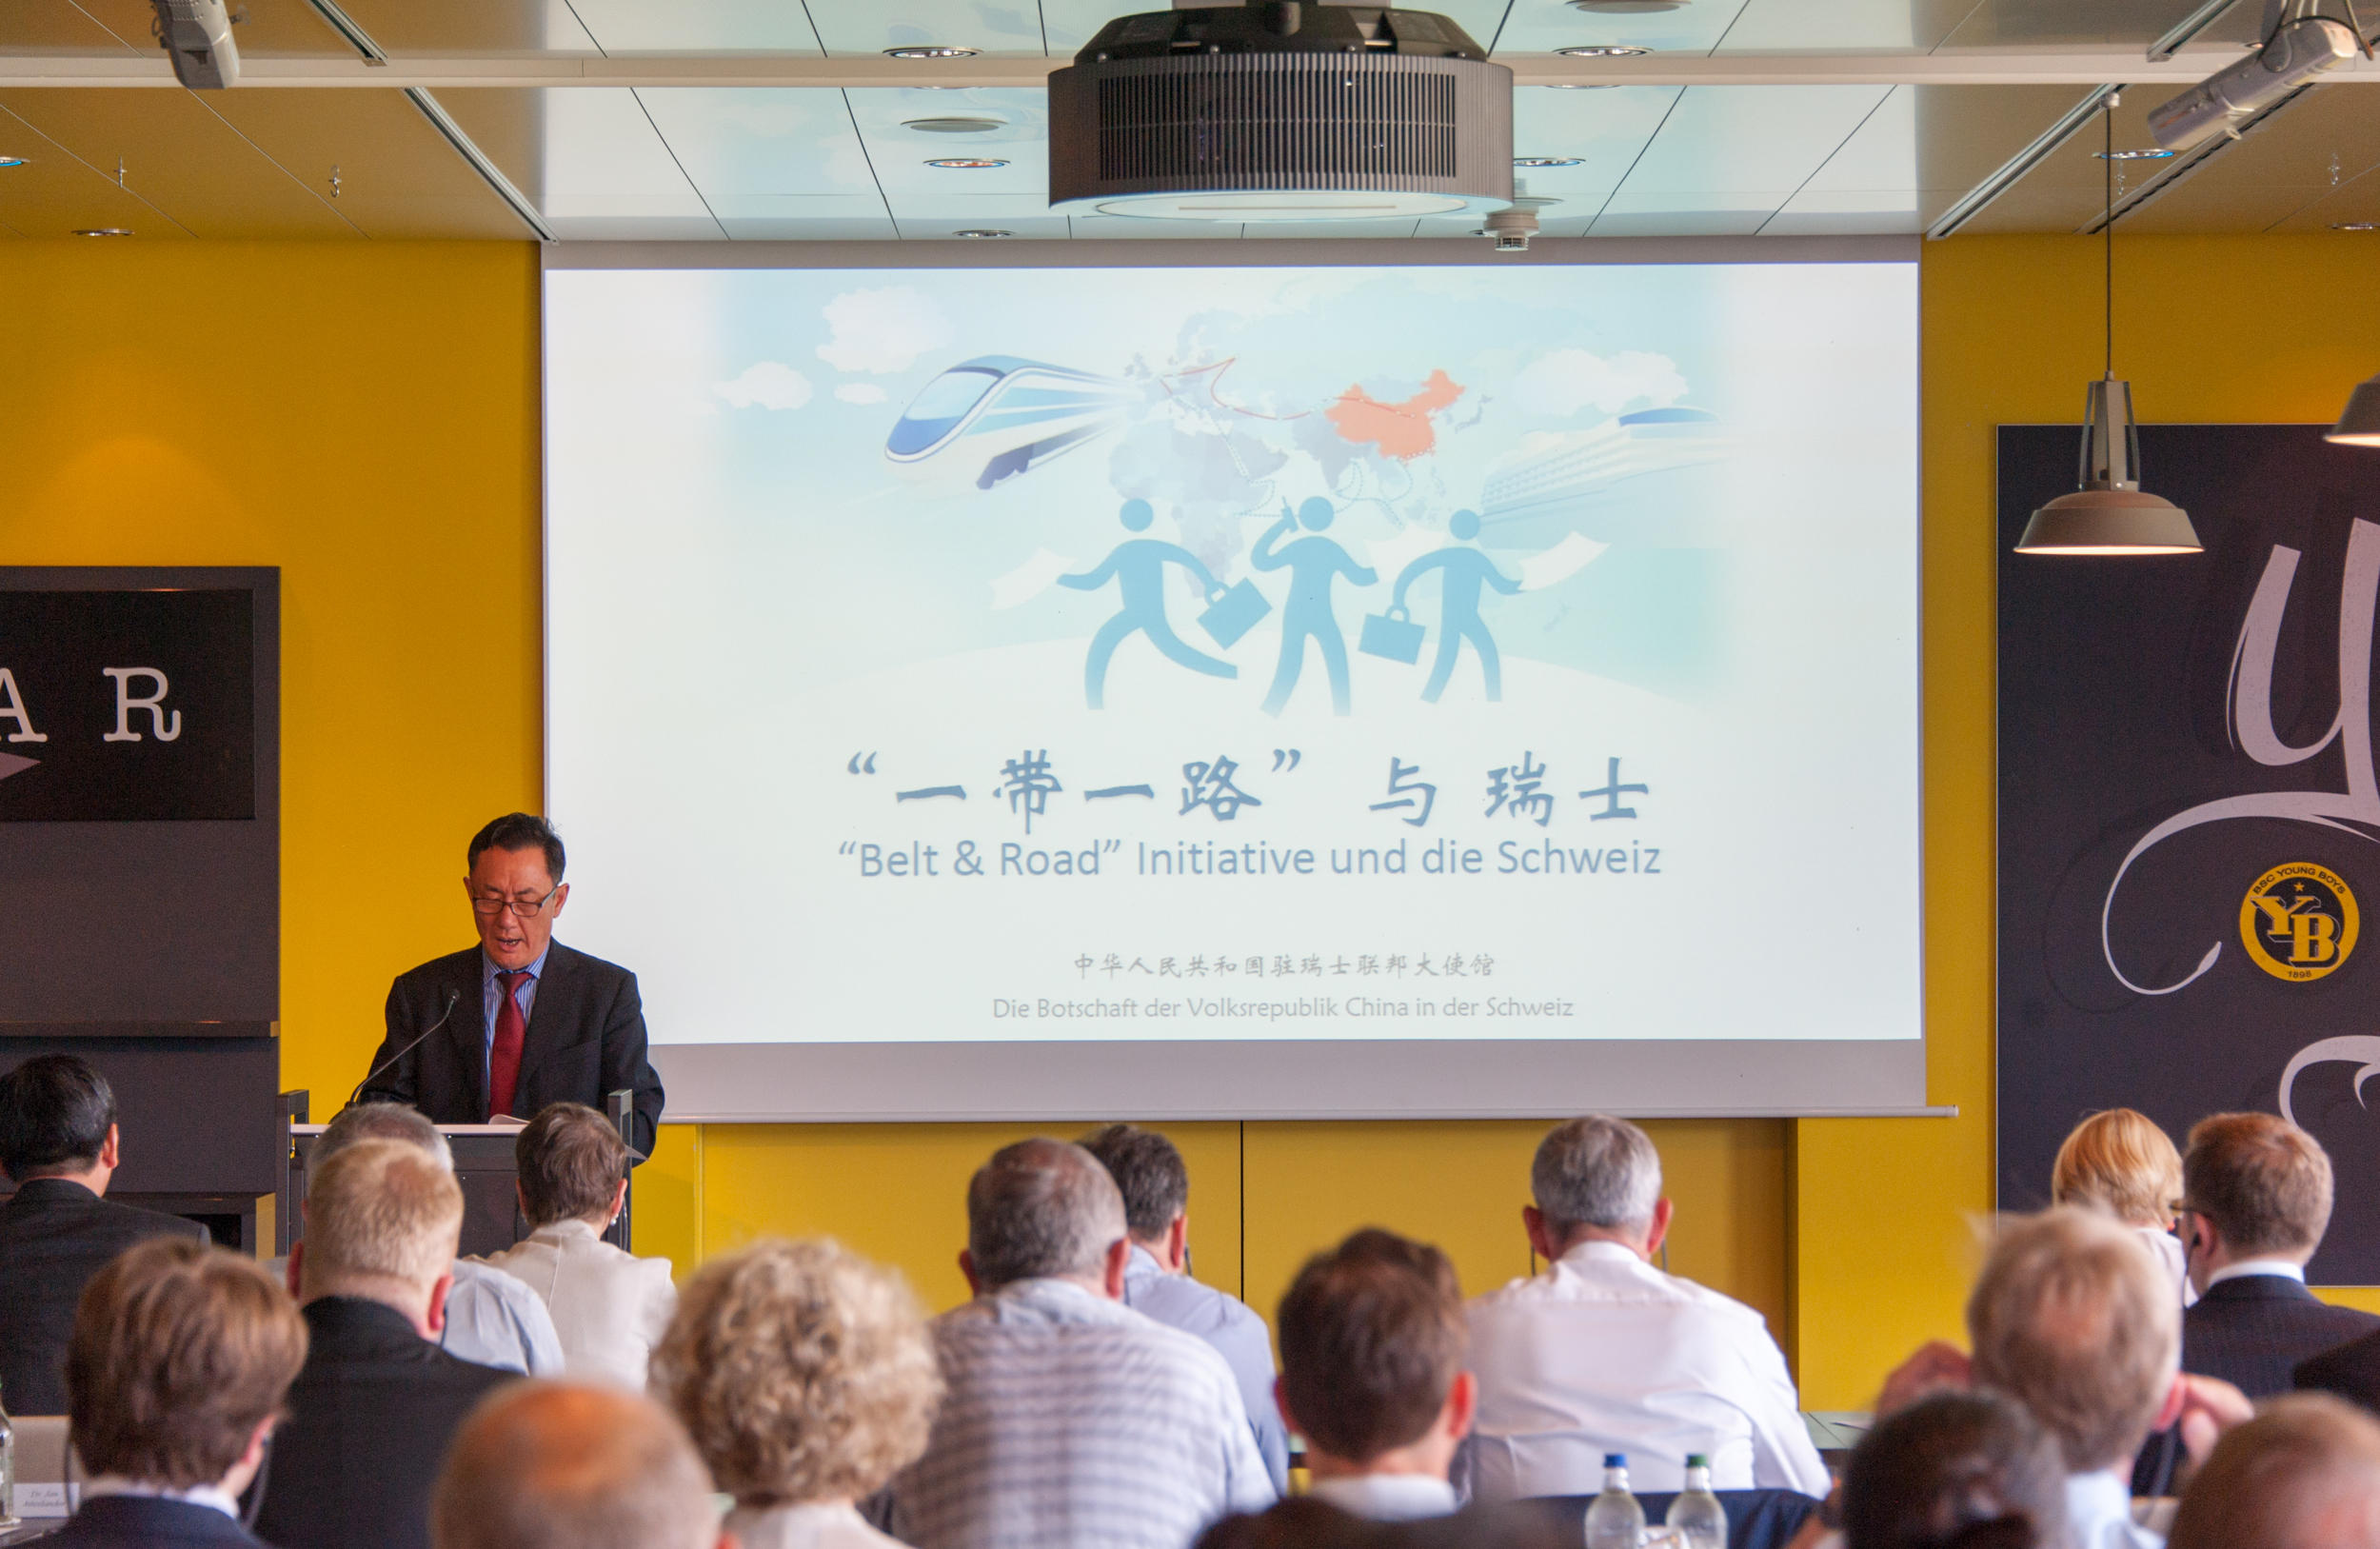 中国驻瑞士大使耿文兵先生在一带一路与瑞士”研讨会上发表讲话